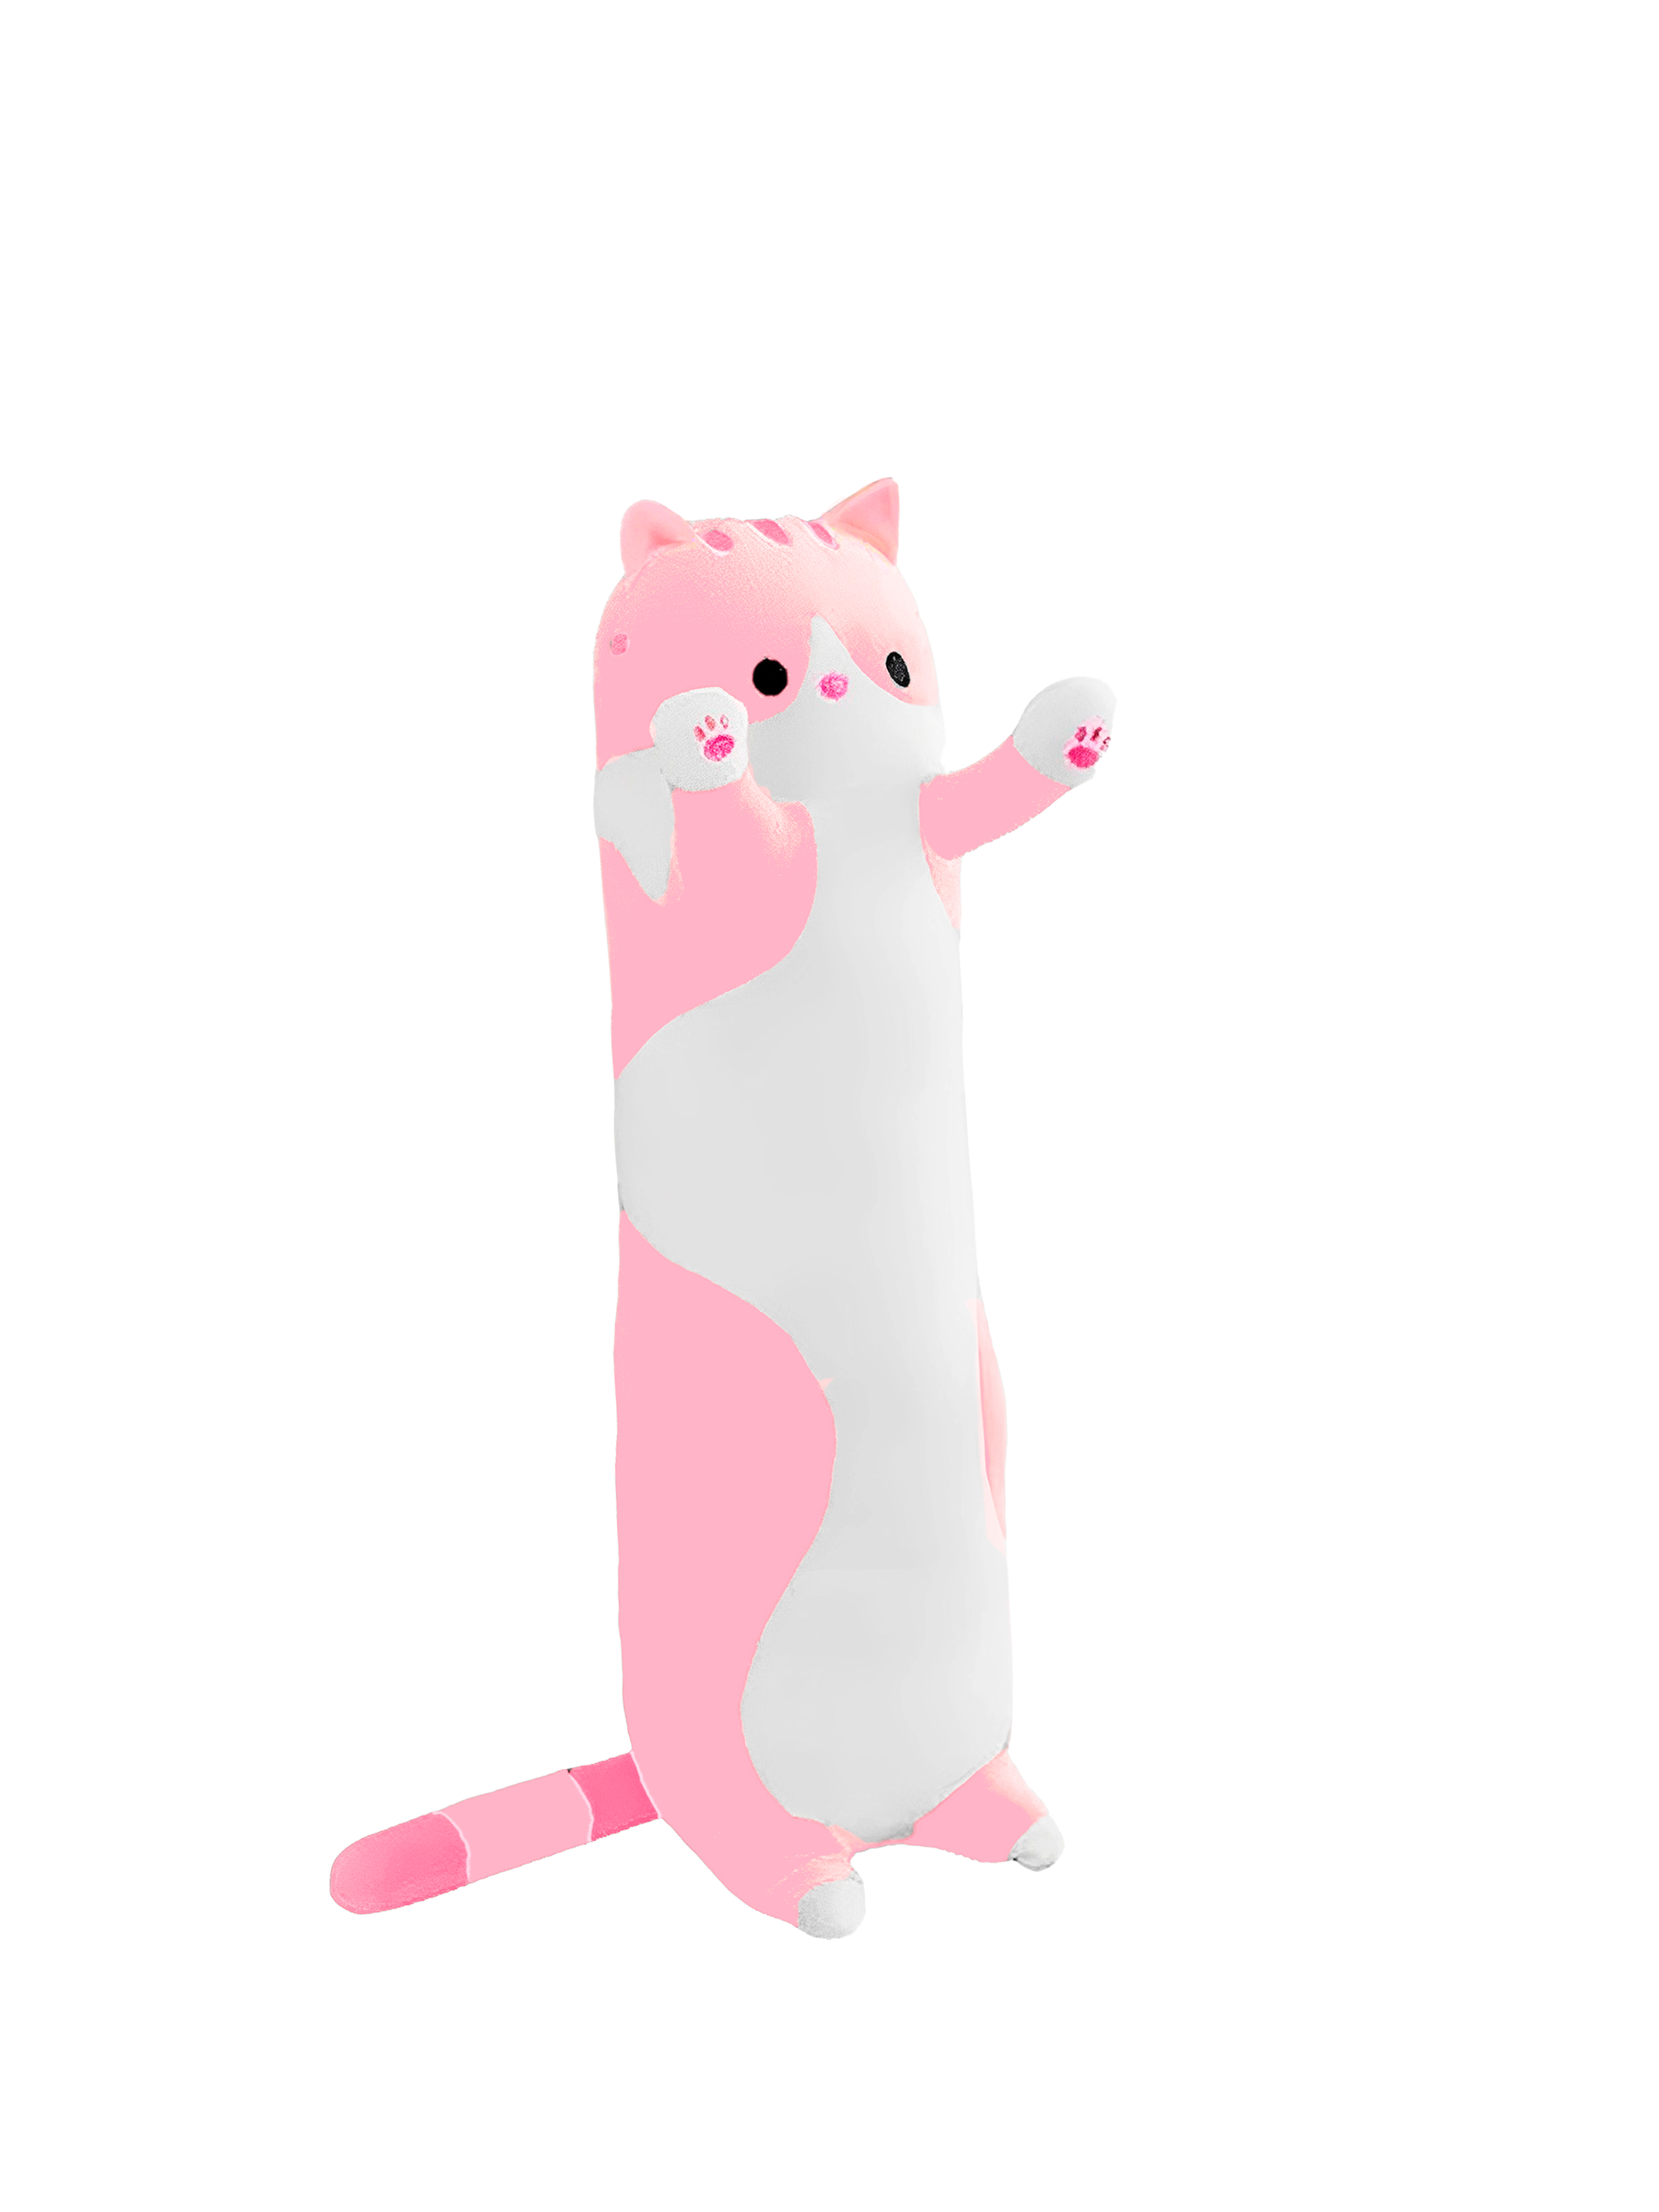 Мягкая игрушка Market toys lab антистресс кот-батон-багет, 50 см, розовый кот батон 50 см мягкая игрушка подушка длинный розовый обнимашка антистресс кот багет